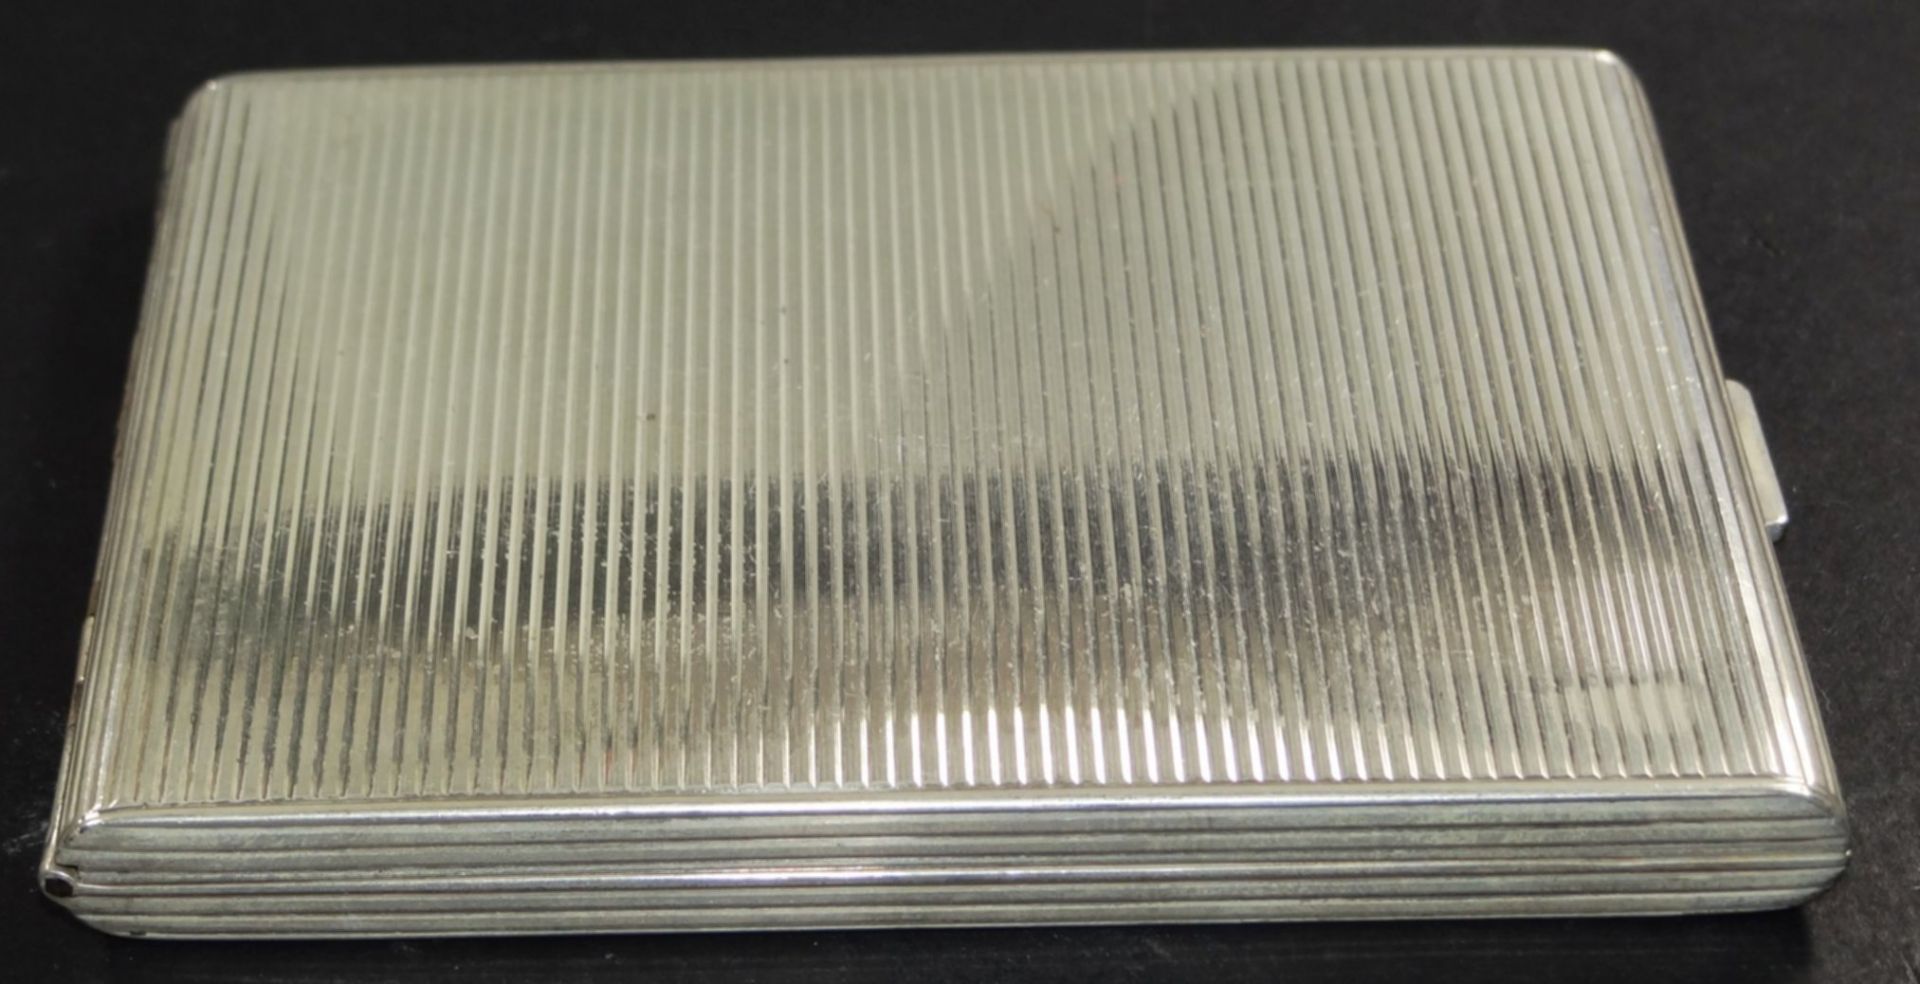 eckiges Silber-925- Zigarettenetui, 10x9 cm, 158 gr. - Bild 3 aus 6